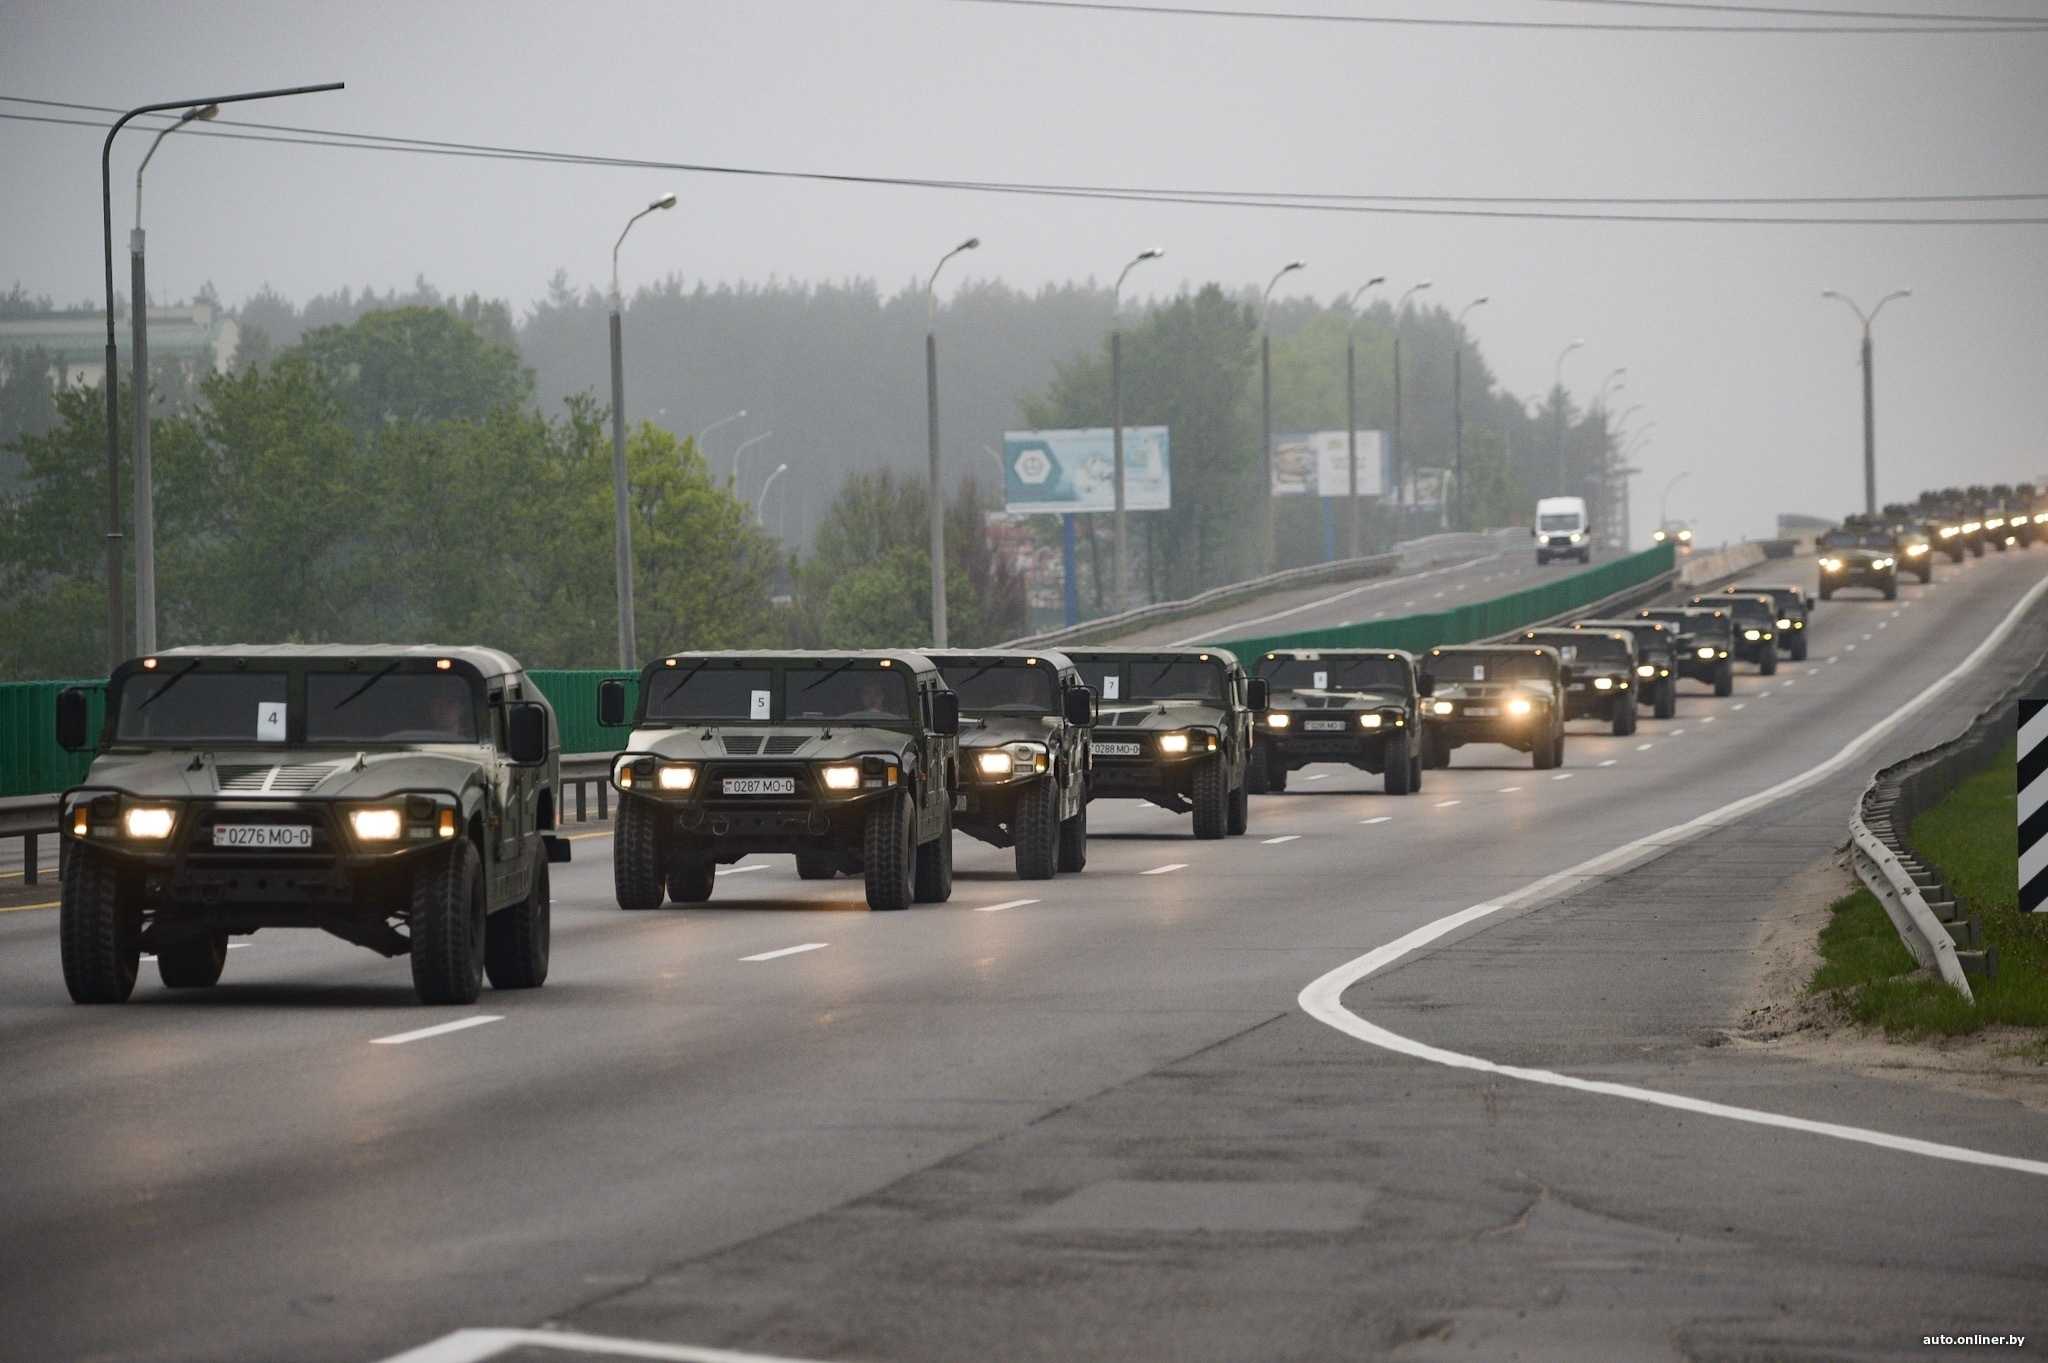 Военная колонна на трассе — что нужно знать водителю?